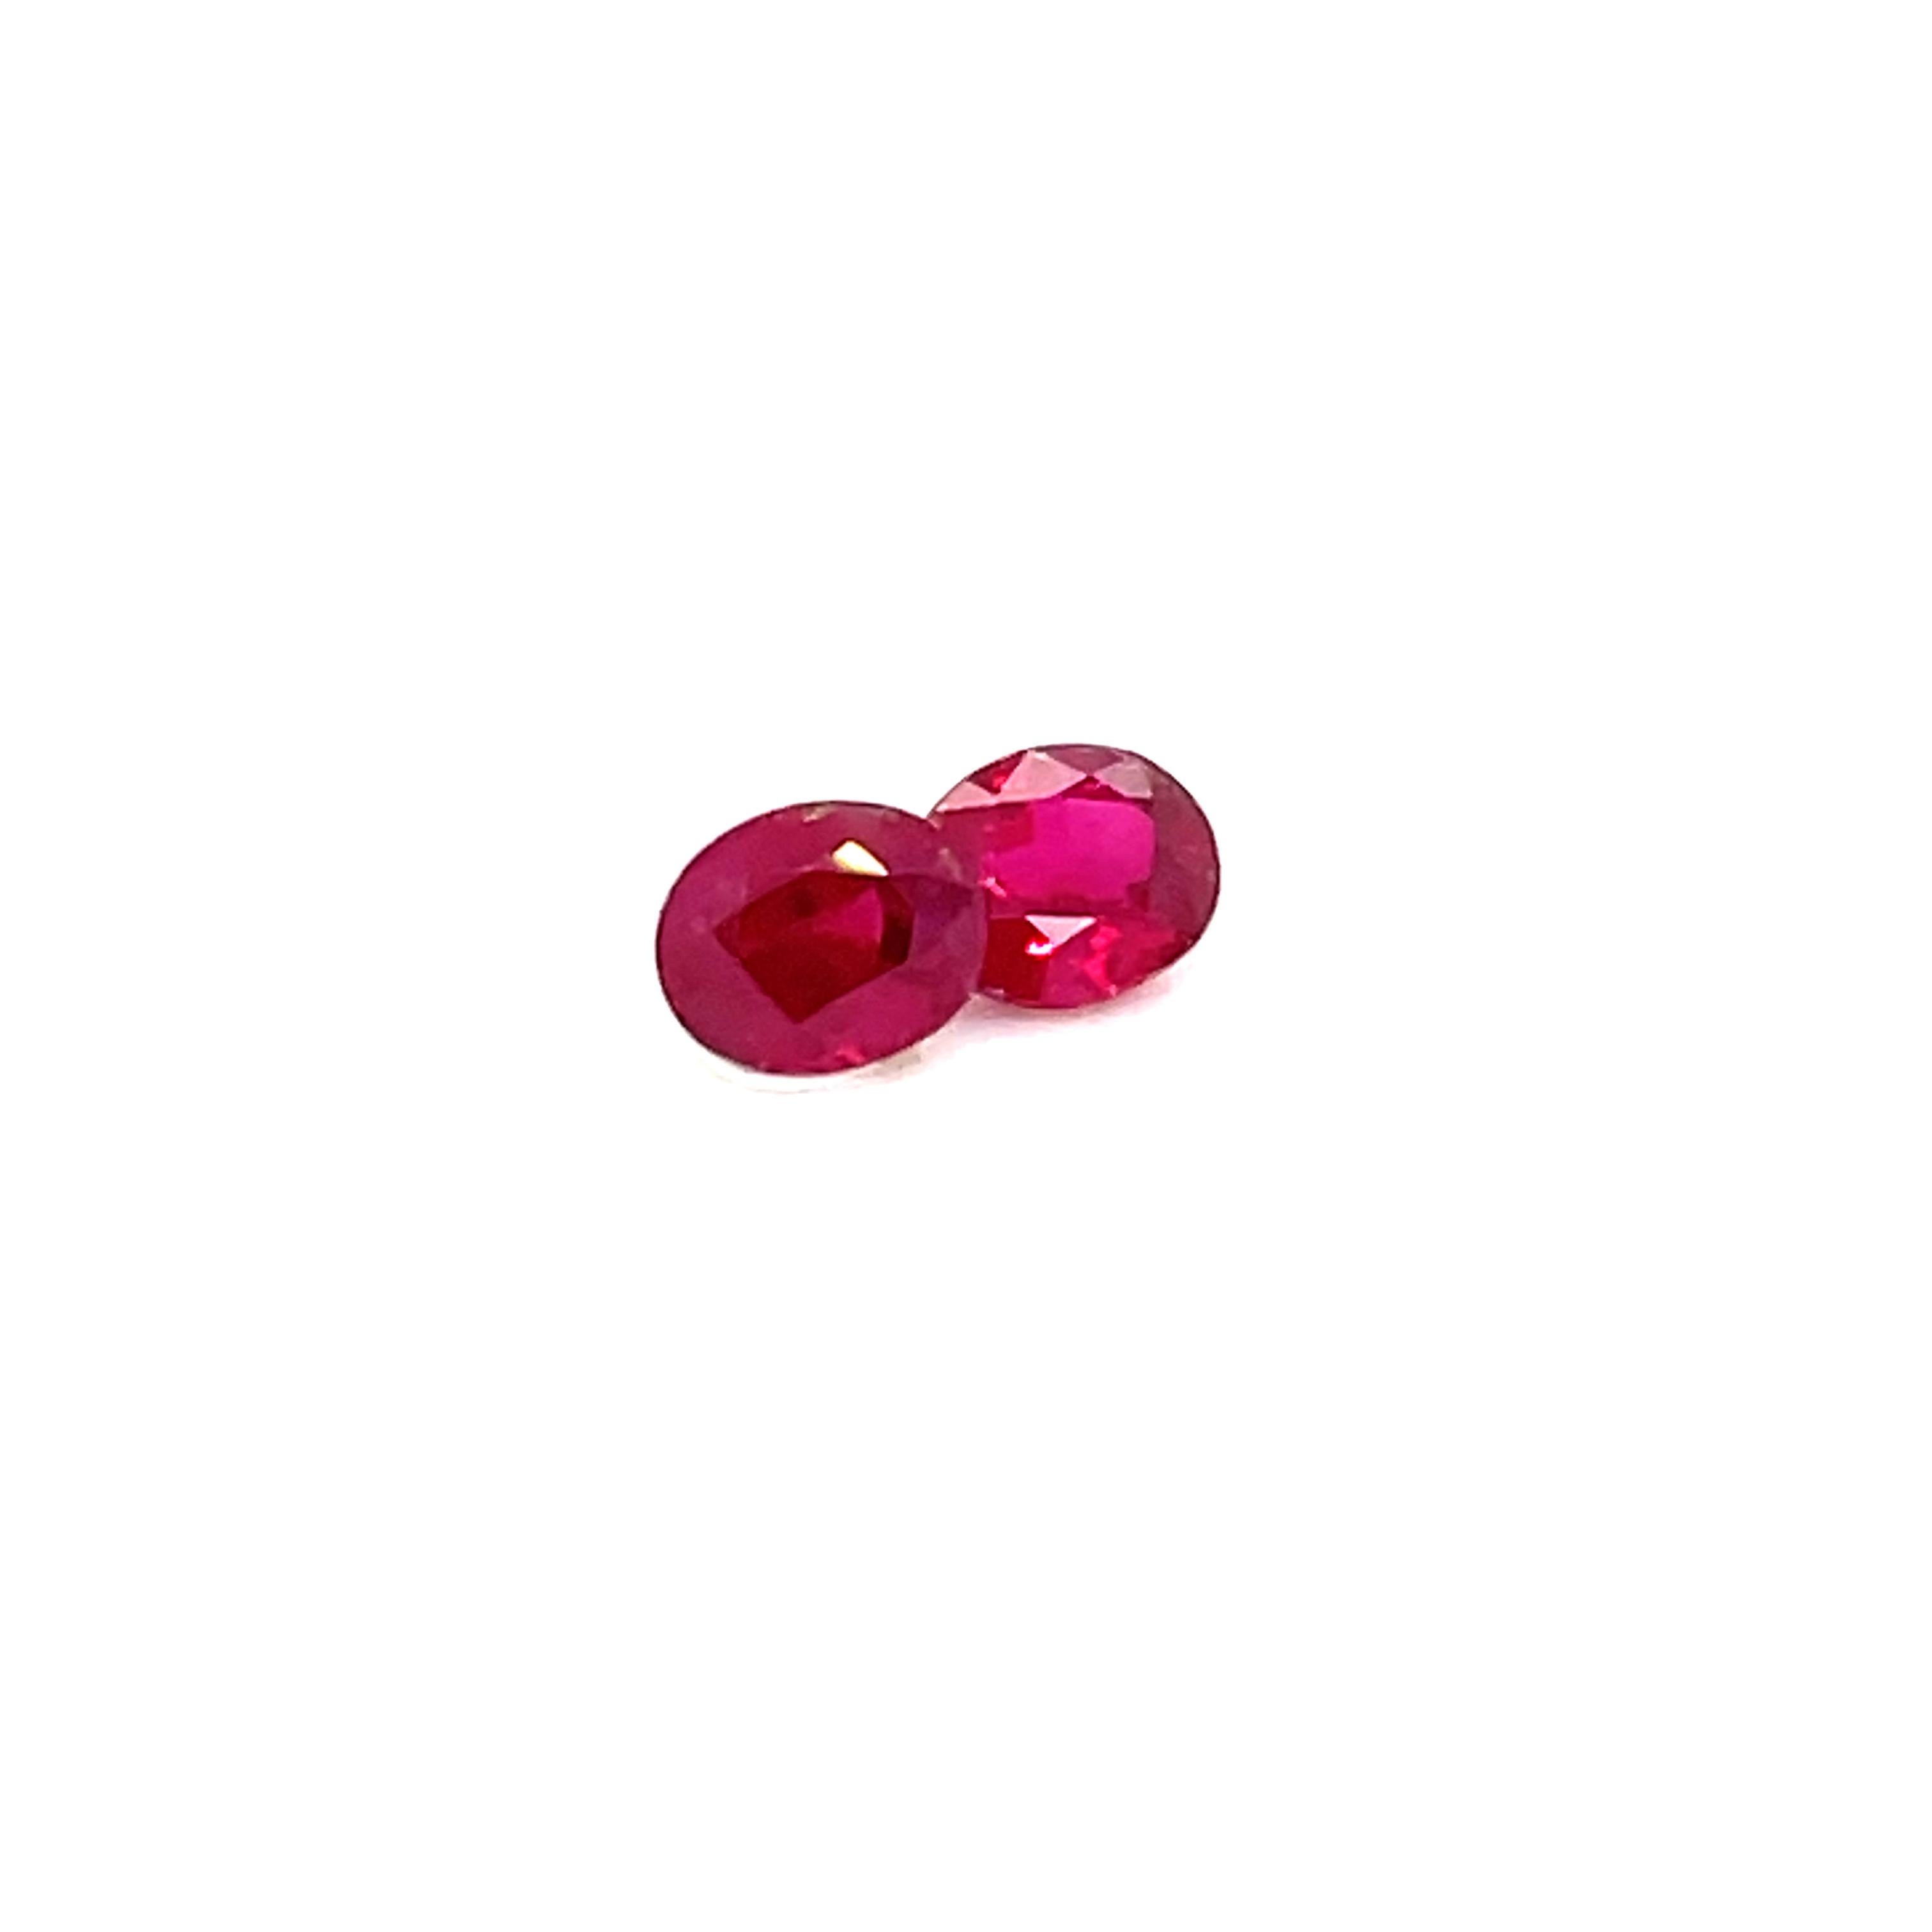 Seltenheit trifft auf Qualität, denn diese Edelsteine sind ein Symbol für Leidenschaft und Begehren.

Diese GRS-zertifizierten birmanischen Taubenblut-Rubine sind ein faszinierendes Duo von insgesamt 2,22 Karat. 

Der eine ist ein ovaler Edelstein